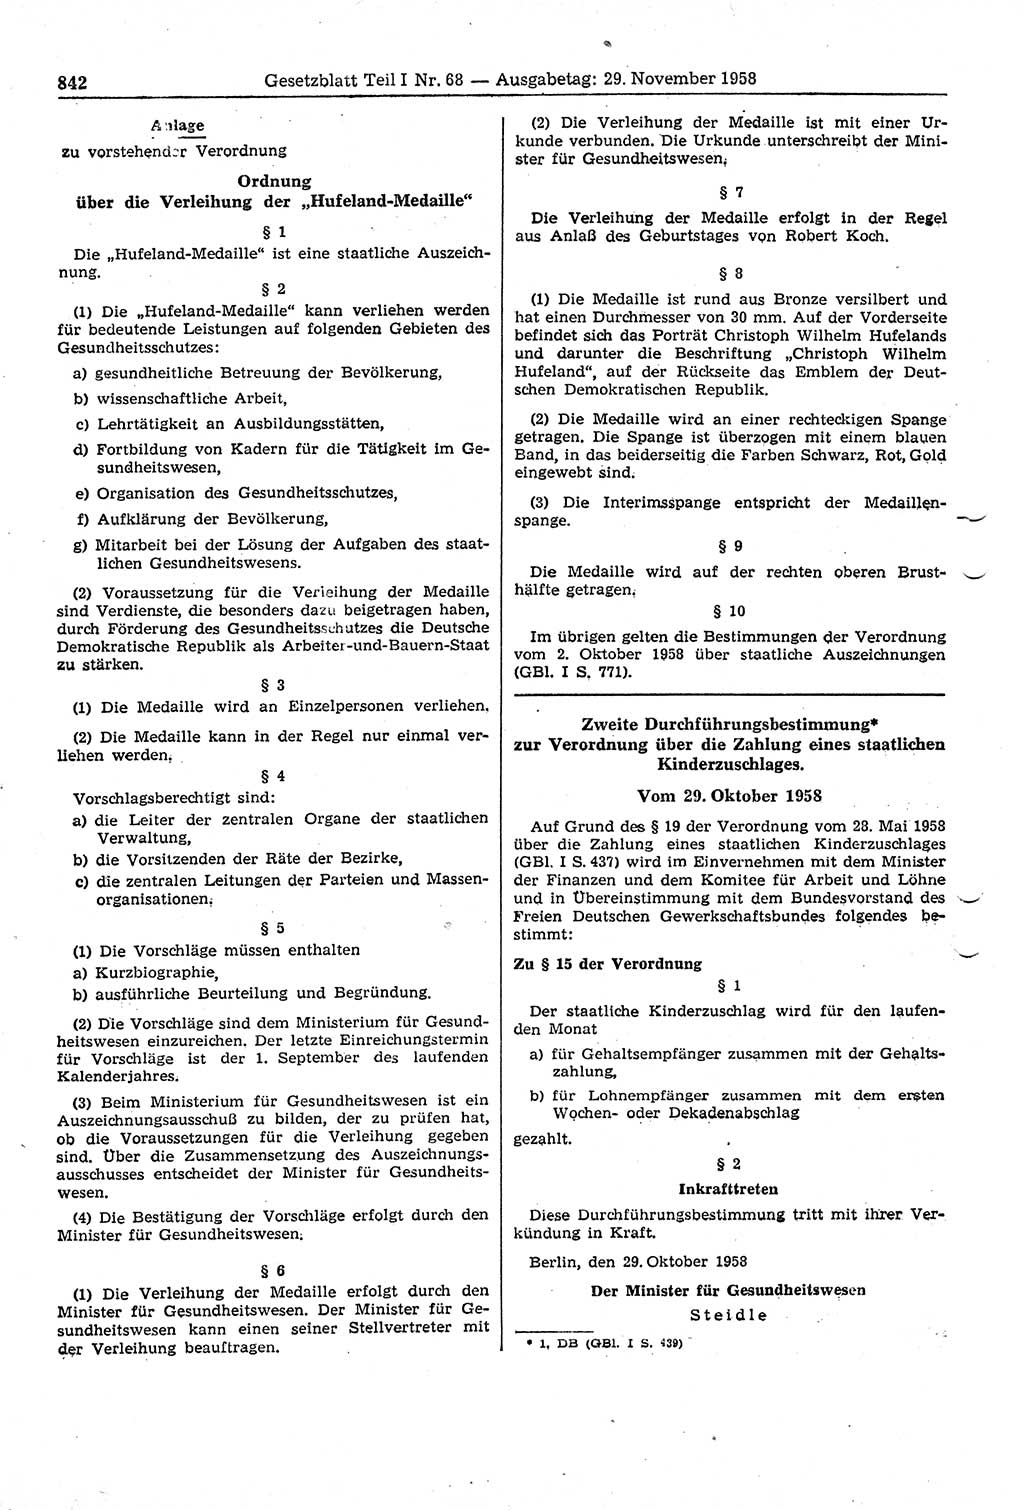 Gesetzblatt (GBl.) der Deutschen Demokratischen Republik (DDR) Teil Ⅰ 1958, Seite 842 (GBl. DDR Ⅰ 1958, S. 842)